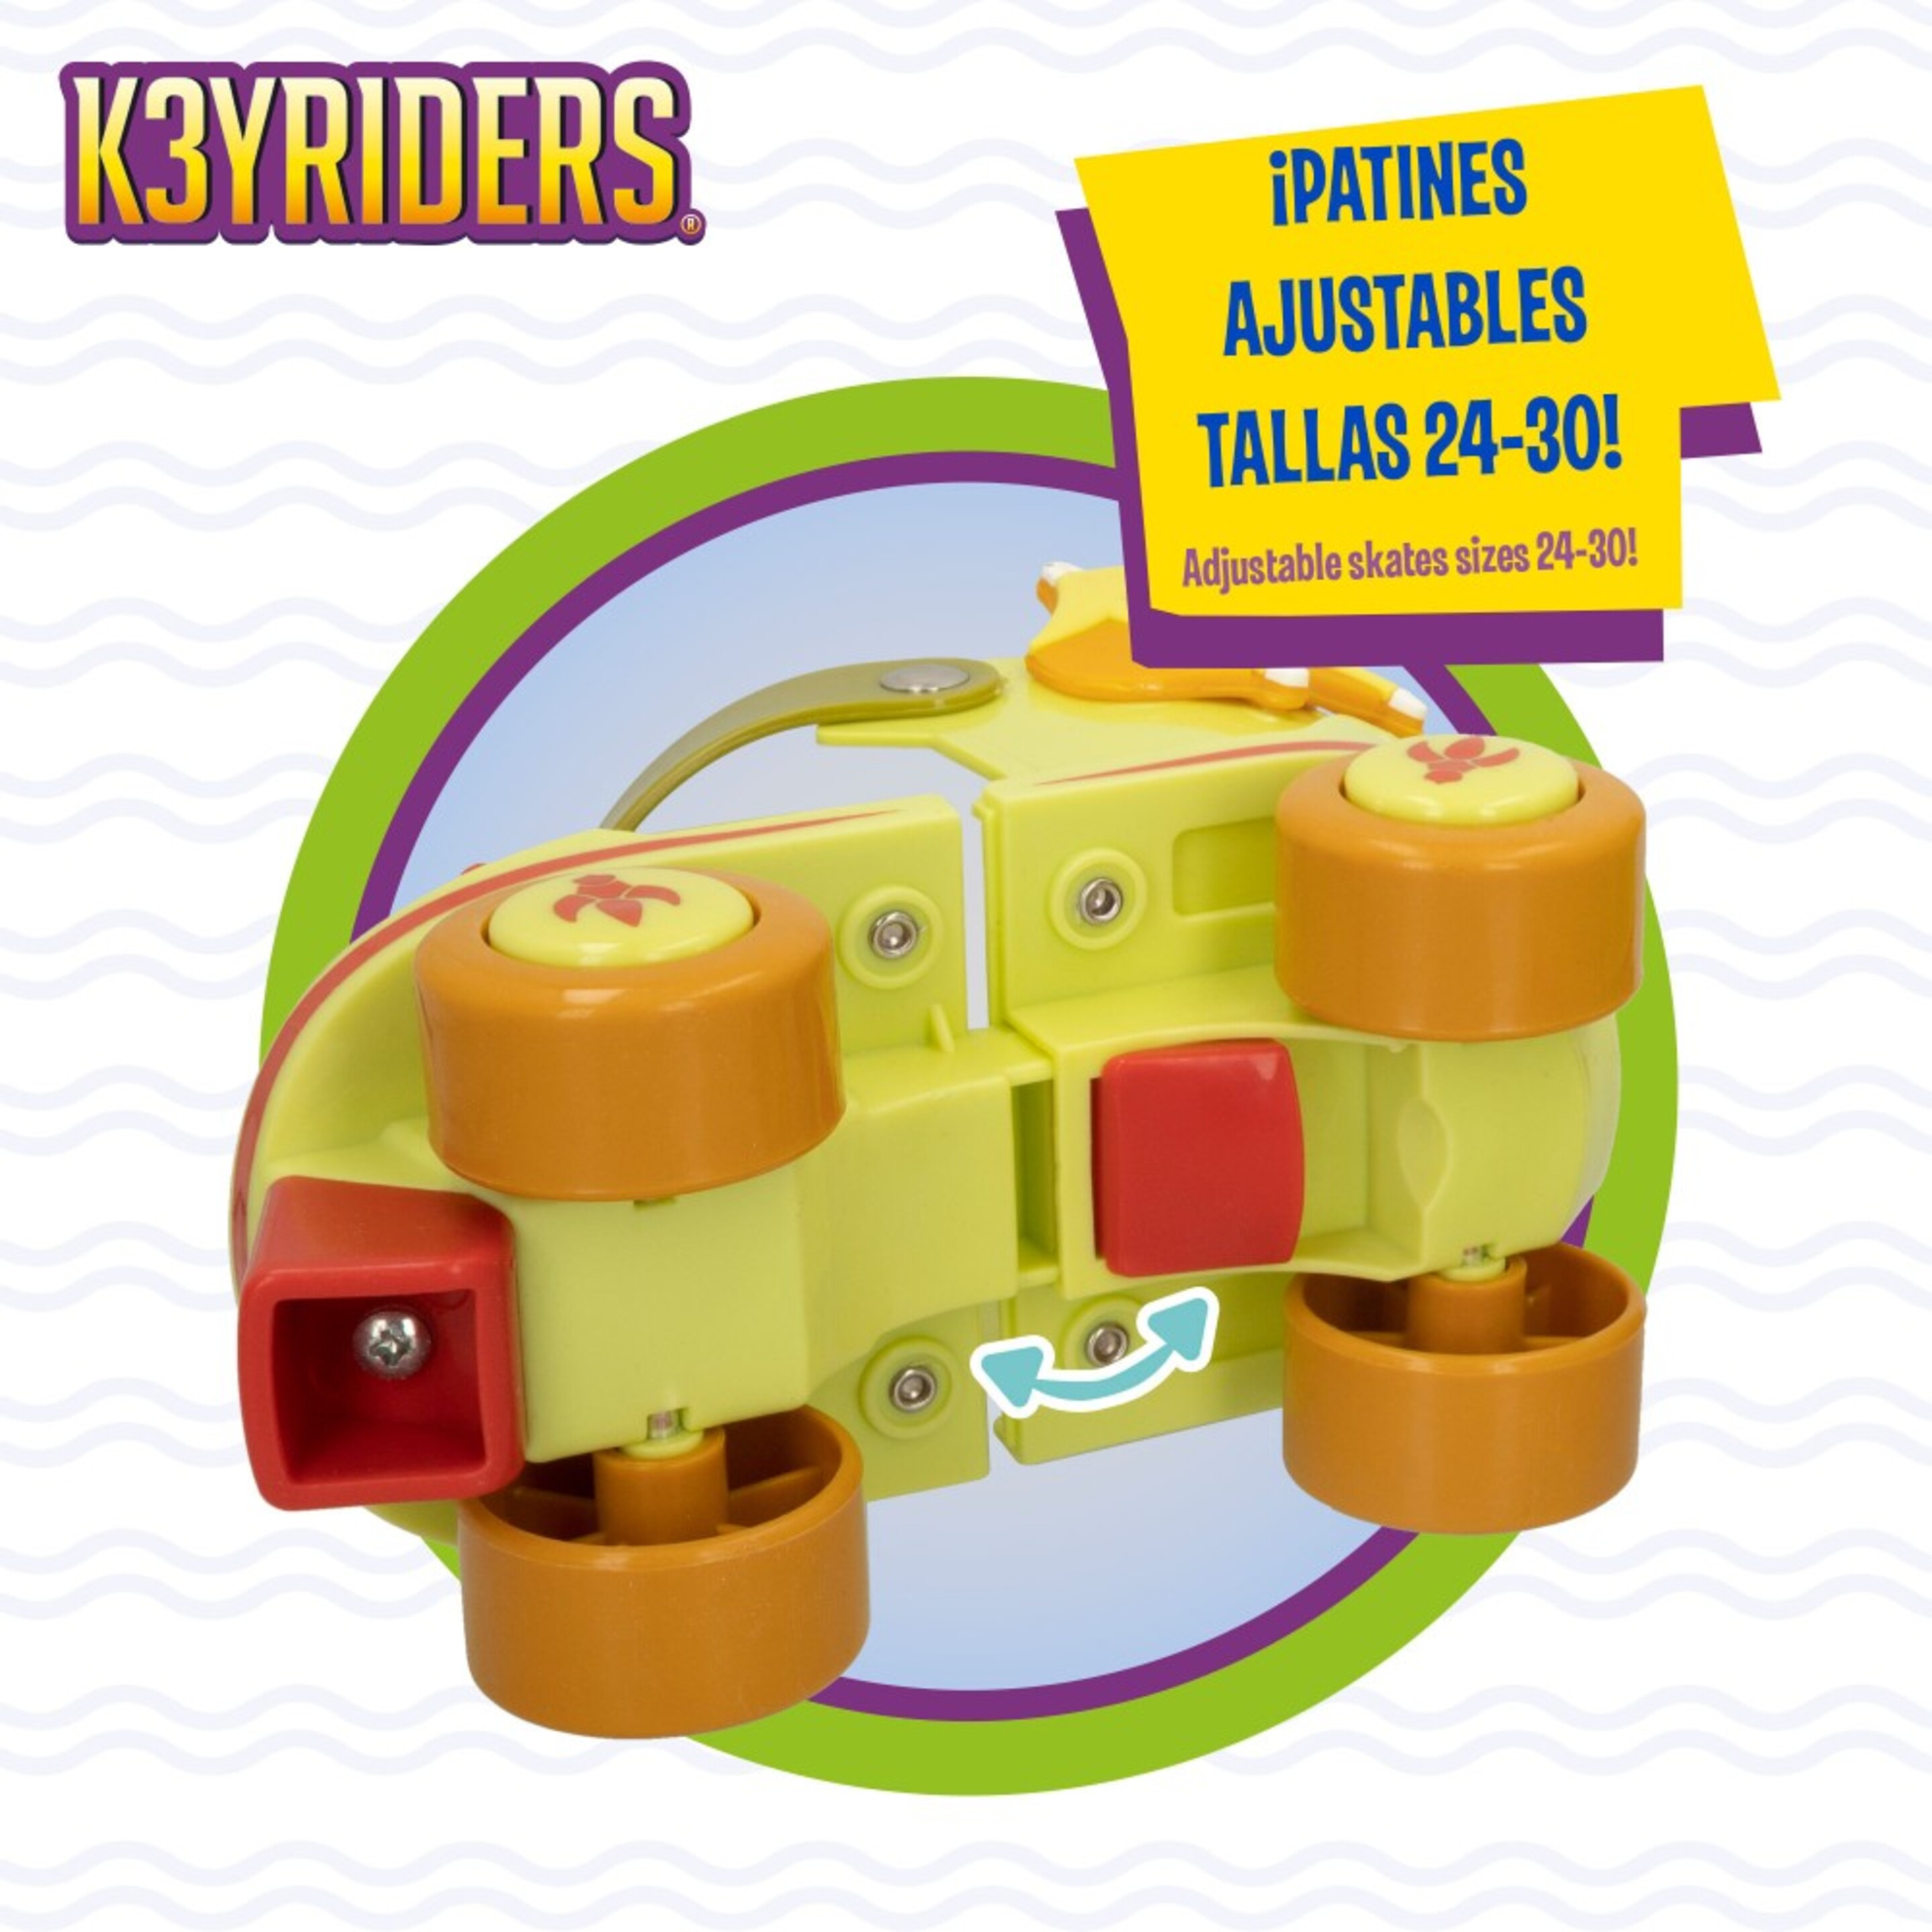 Kit Patines 4 Ruedas De Dragón Talla 24-30 K3yriders - Multicolor  MKP